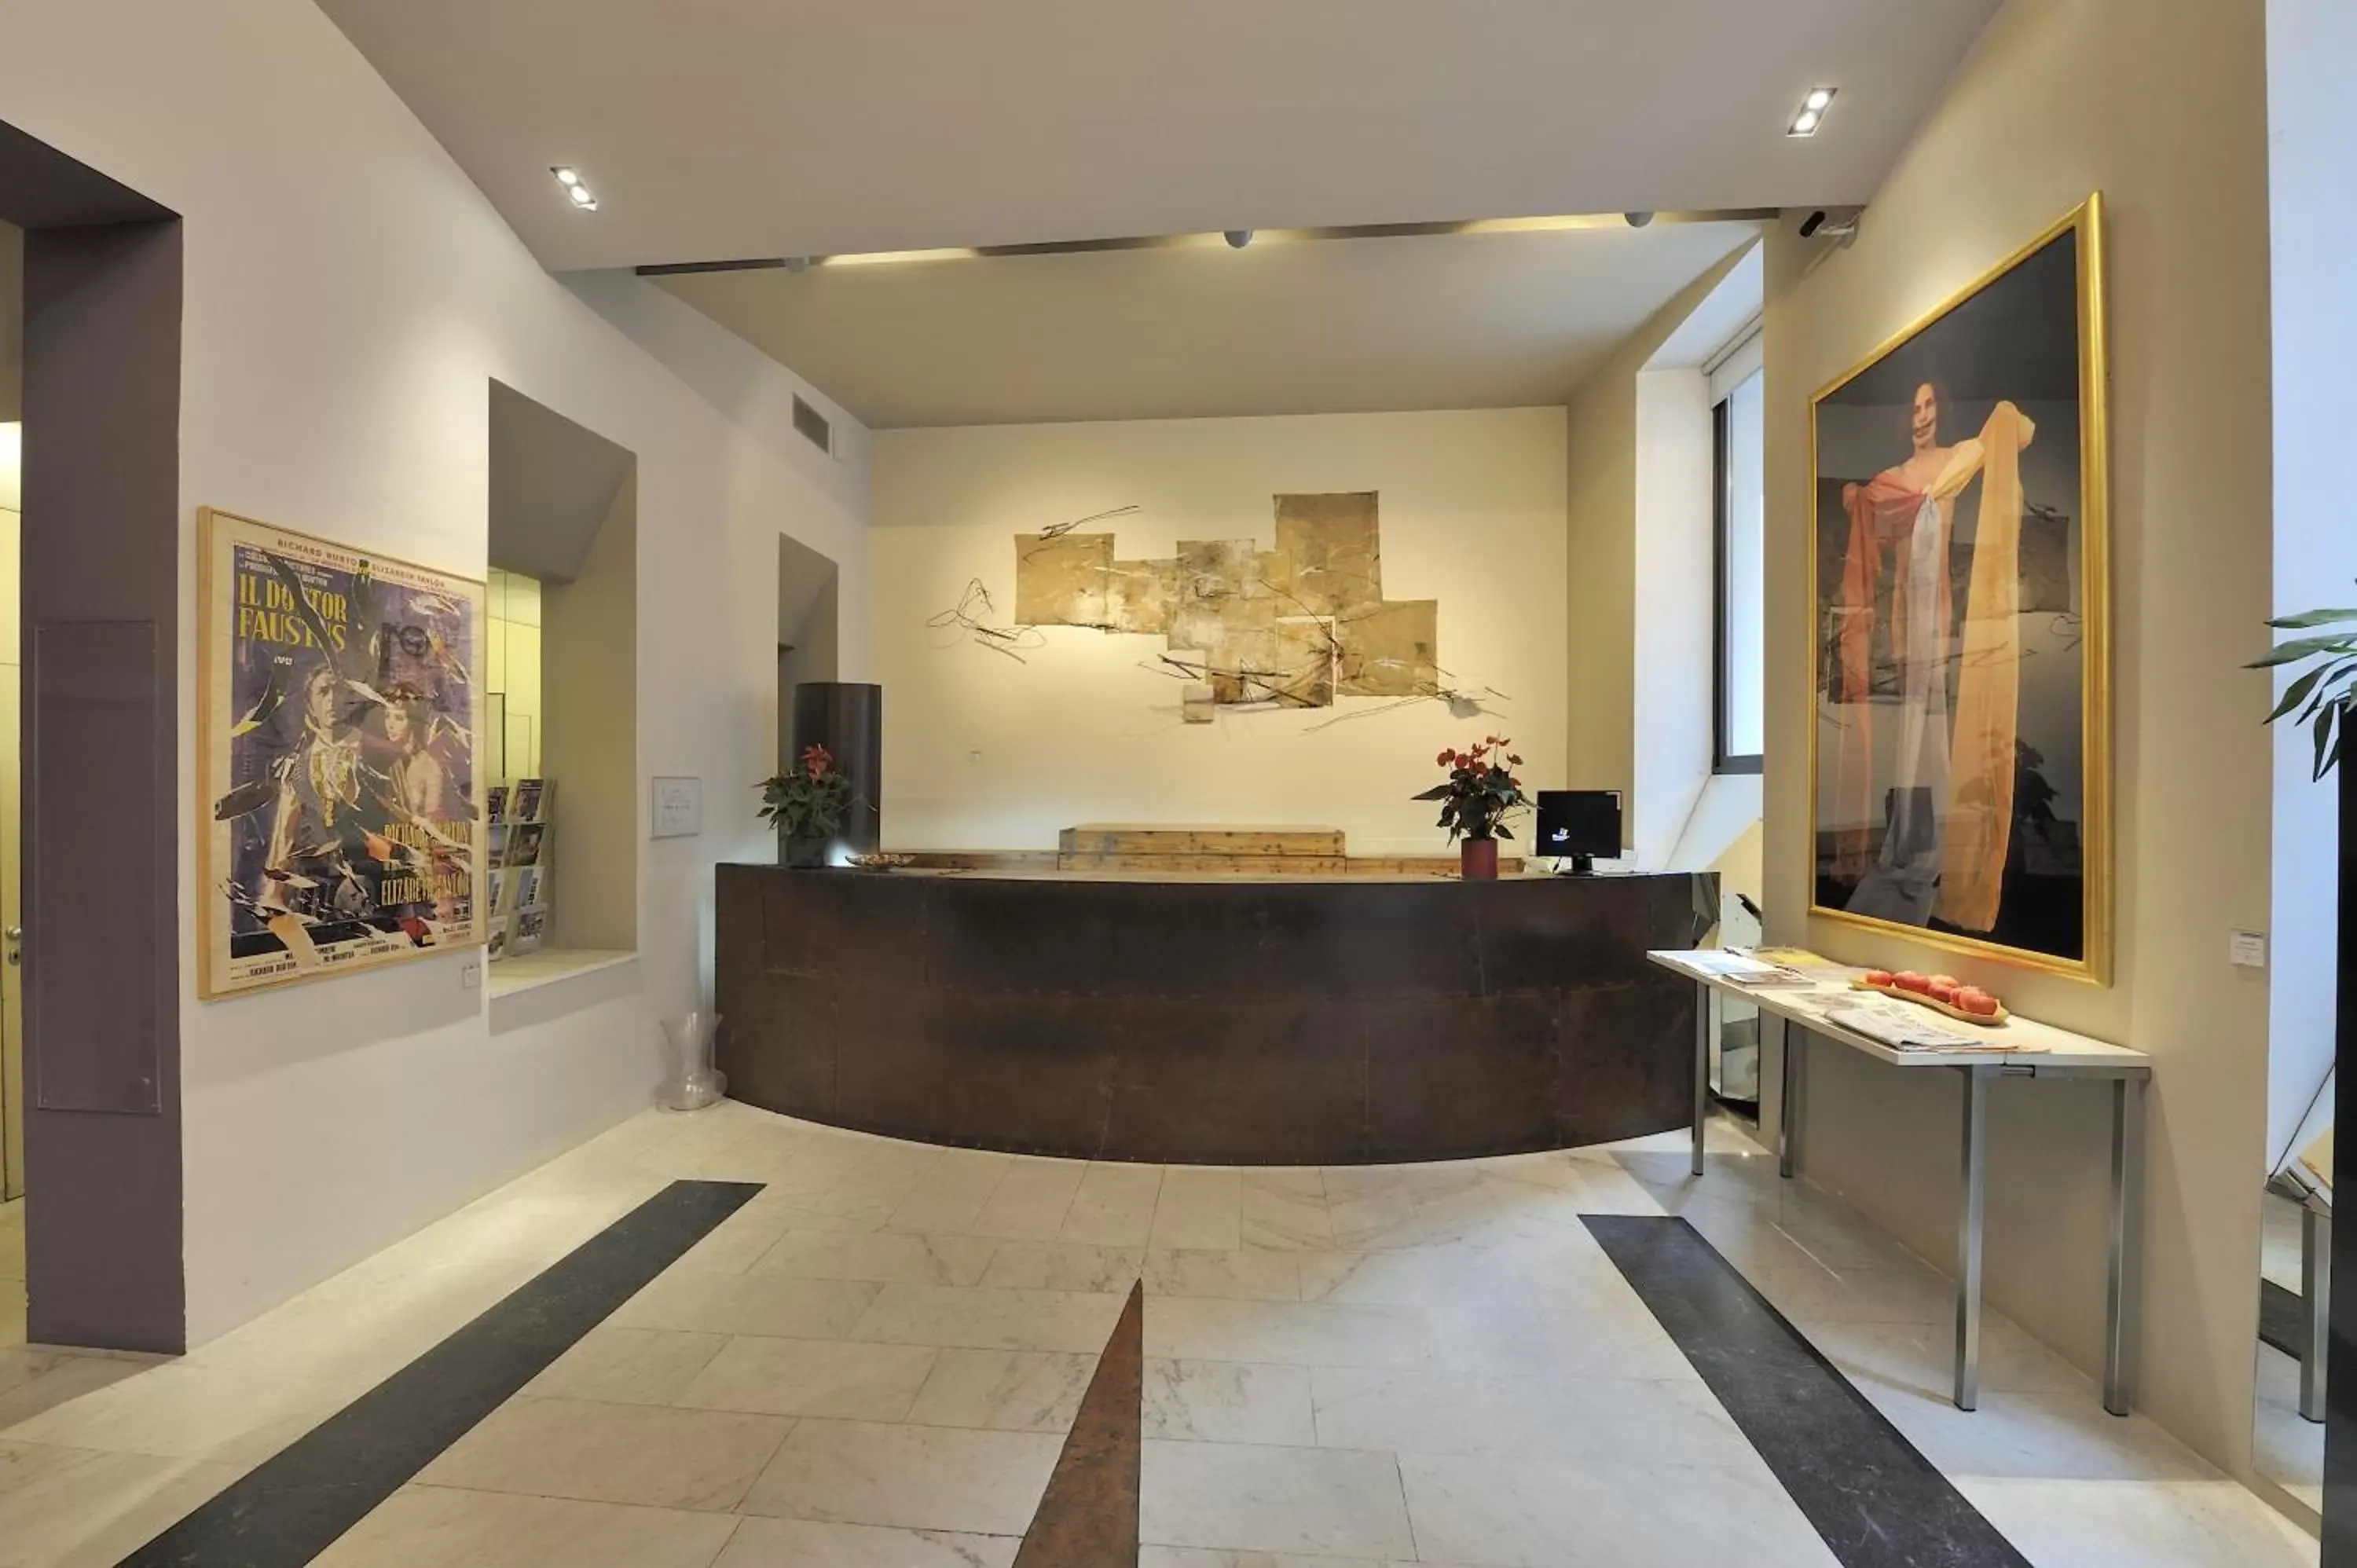 Lobby or reception, Lobby/Reception in Art Hotel Boston